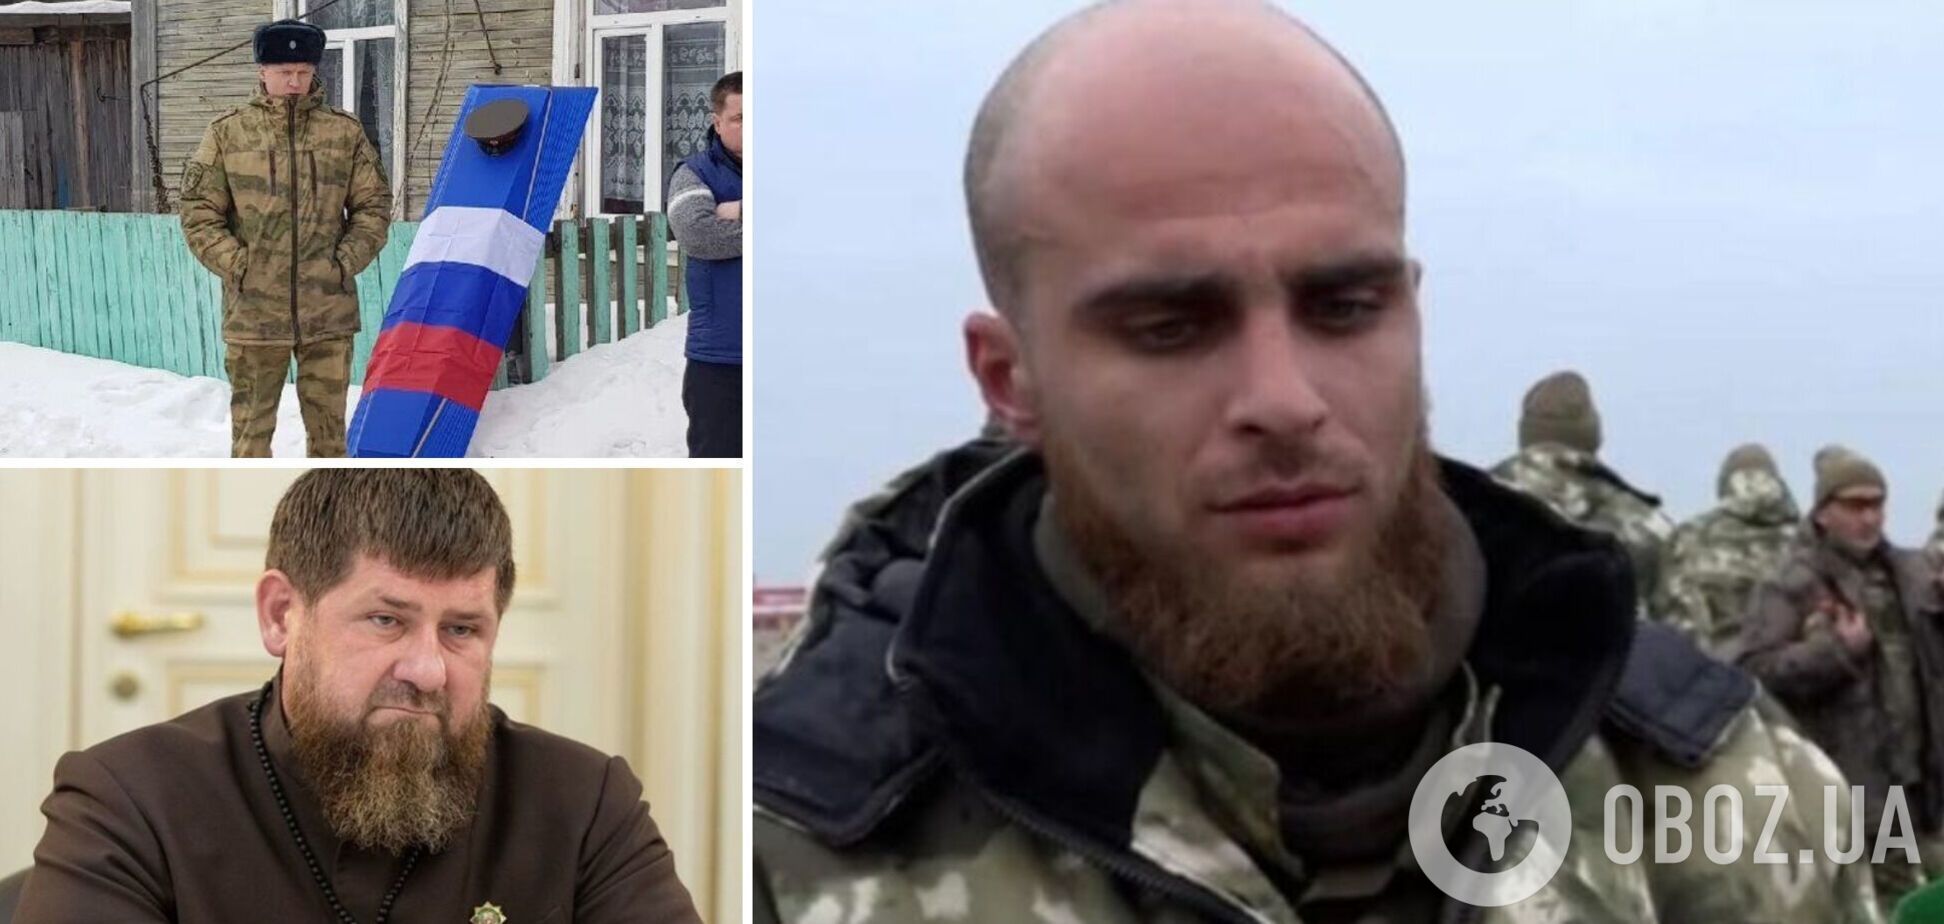 ВСУ ликвидировали 'спецназовца' 'Ахмата' из Волгограда, который пошел добровольцем убивать украинцев: видео с ним публиковал Кадыров. Видео